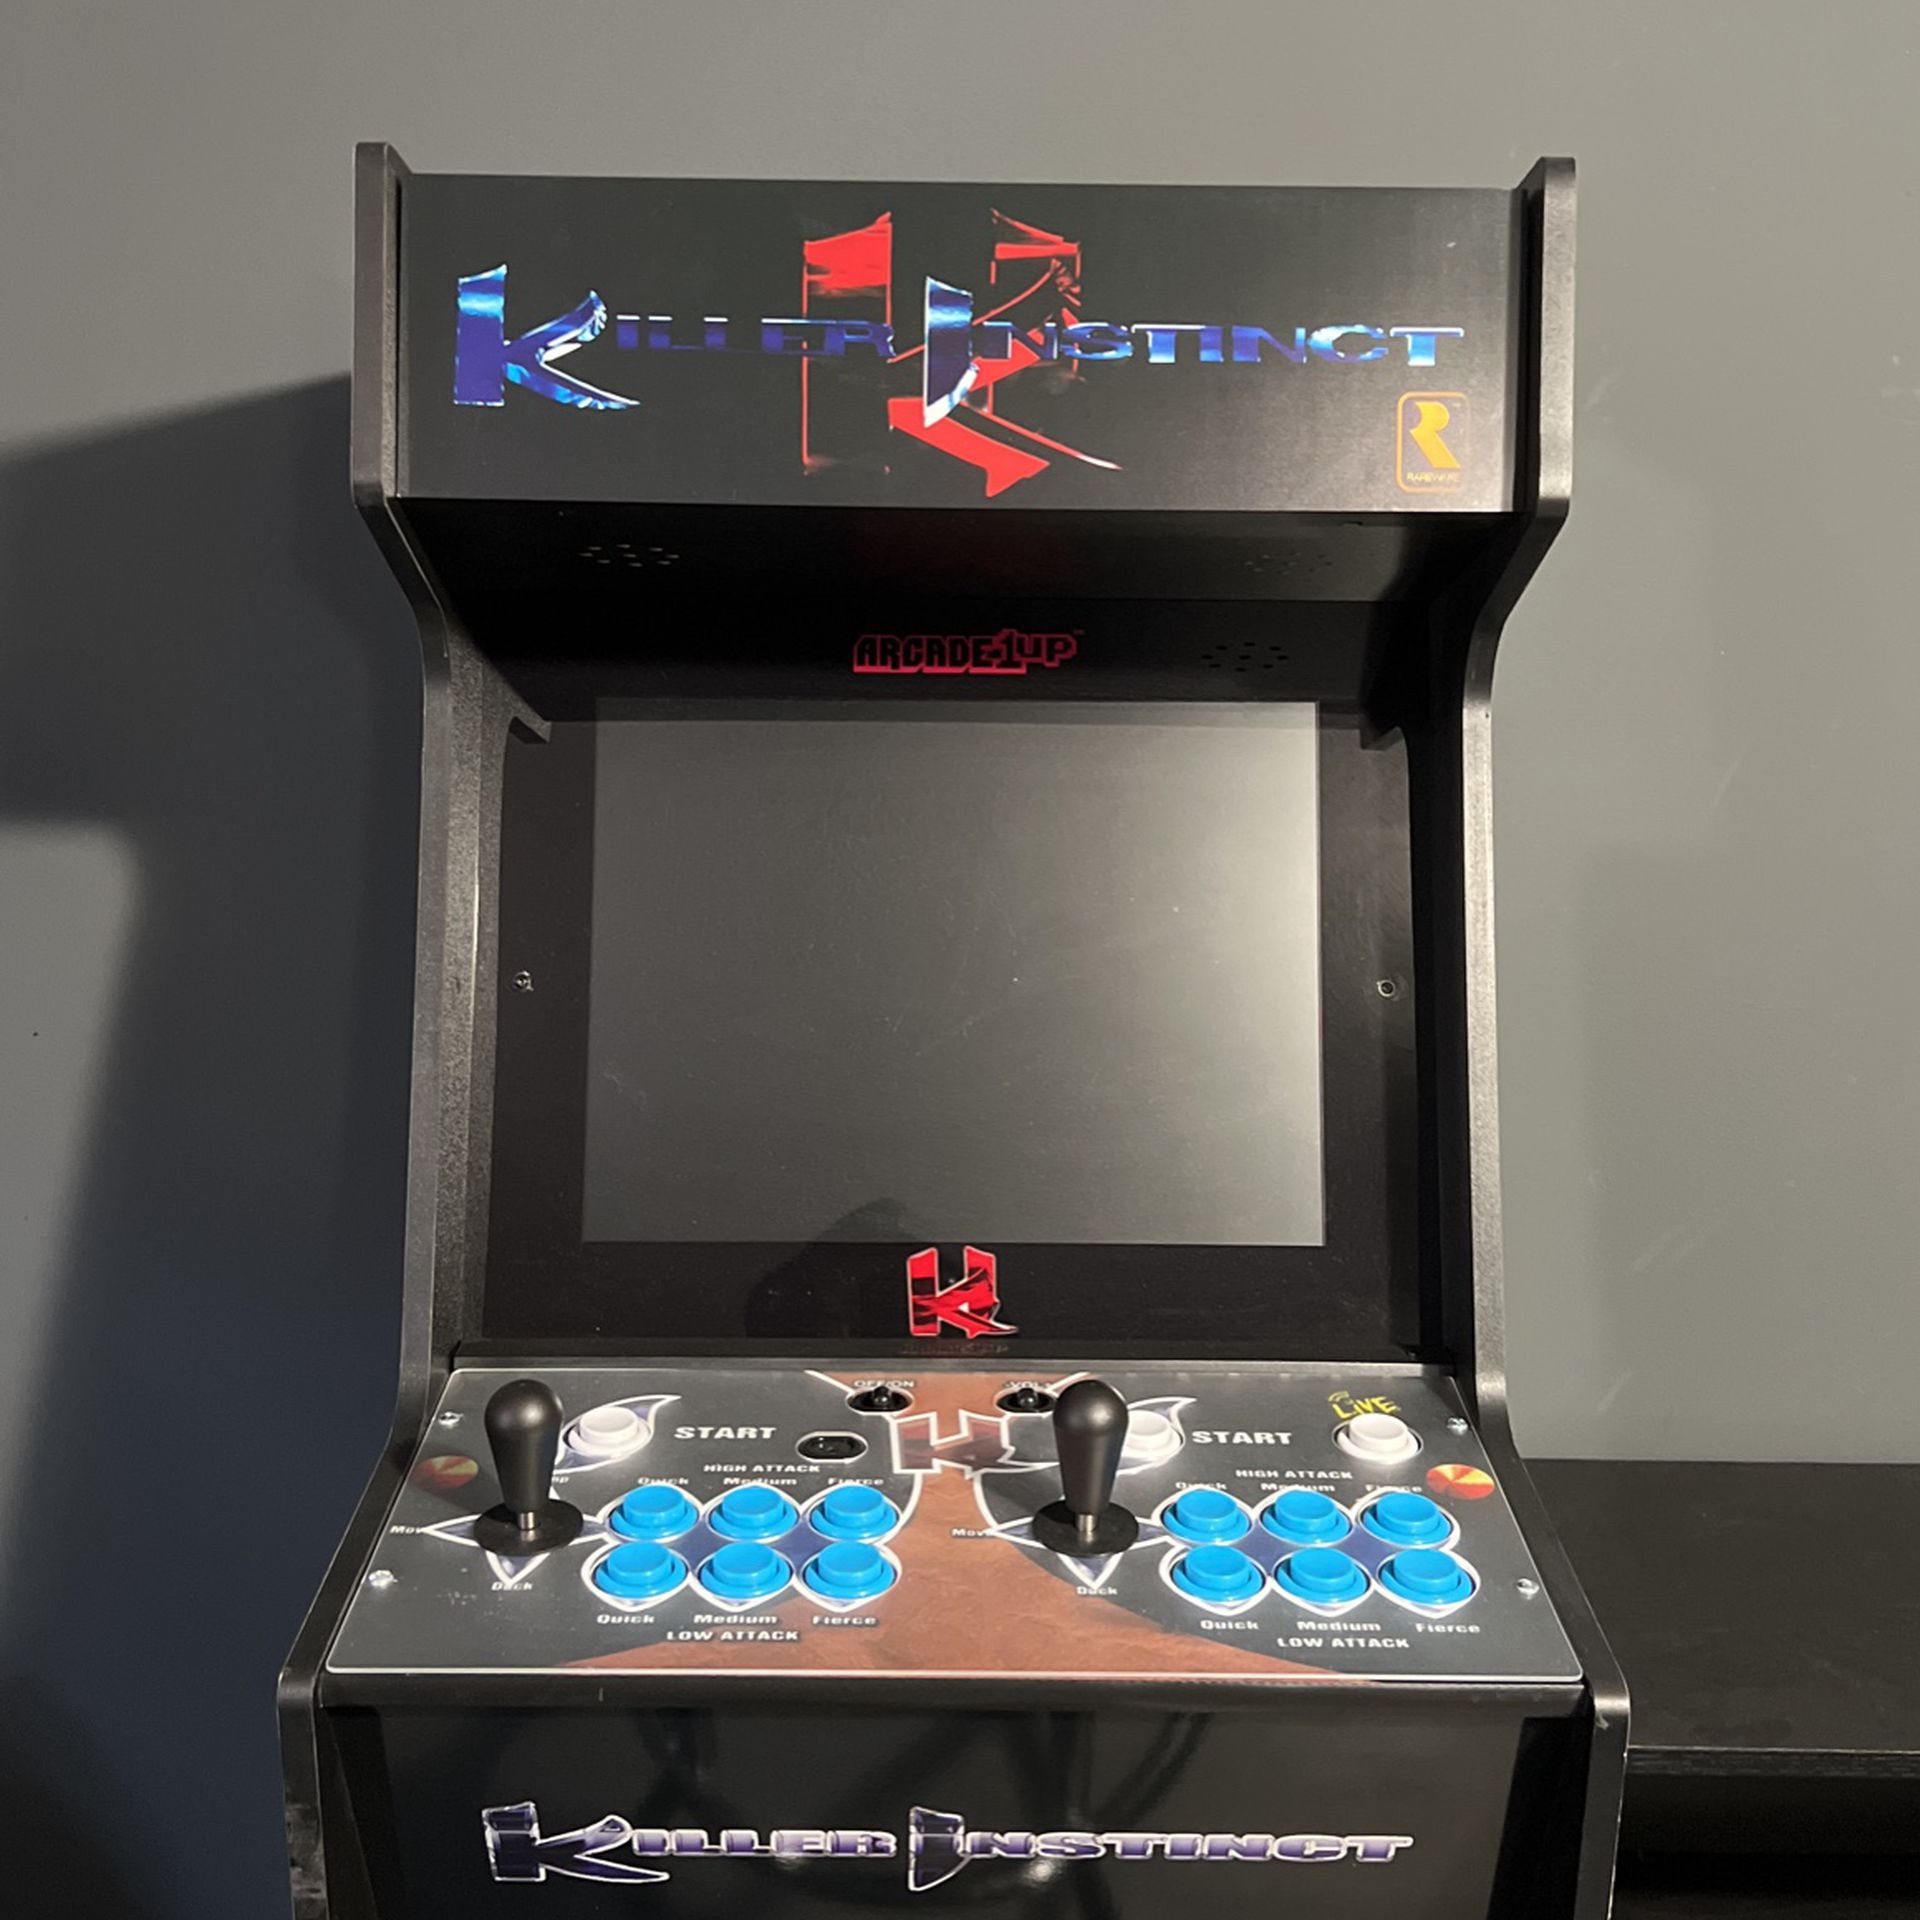 Killer Instinct Arcade 1Up Machine Built